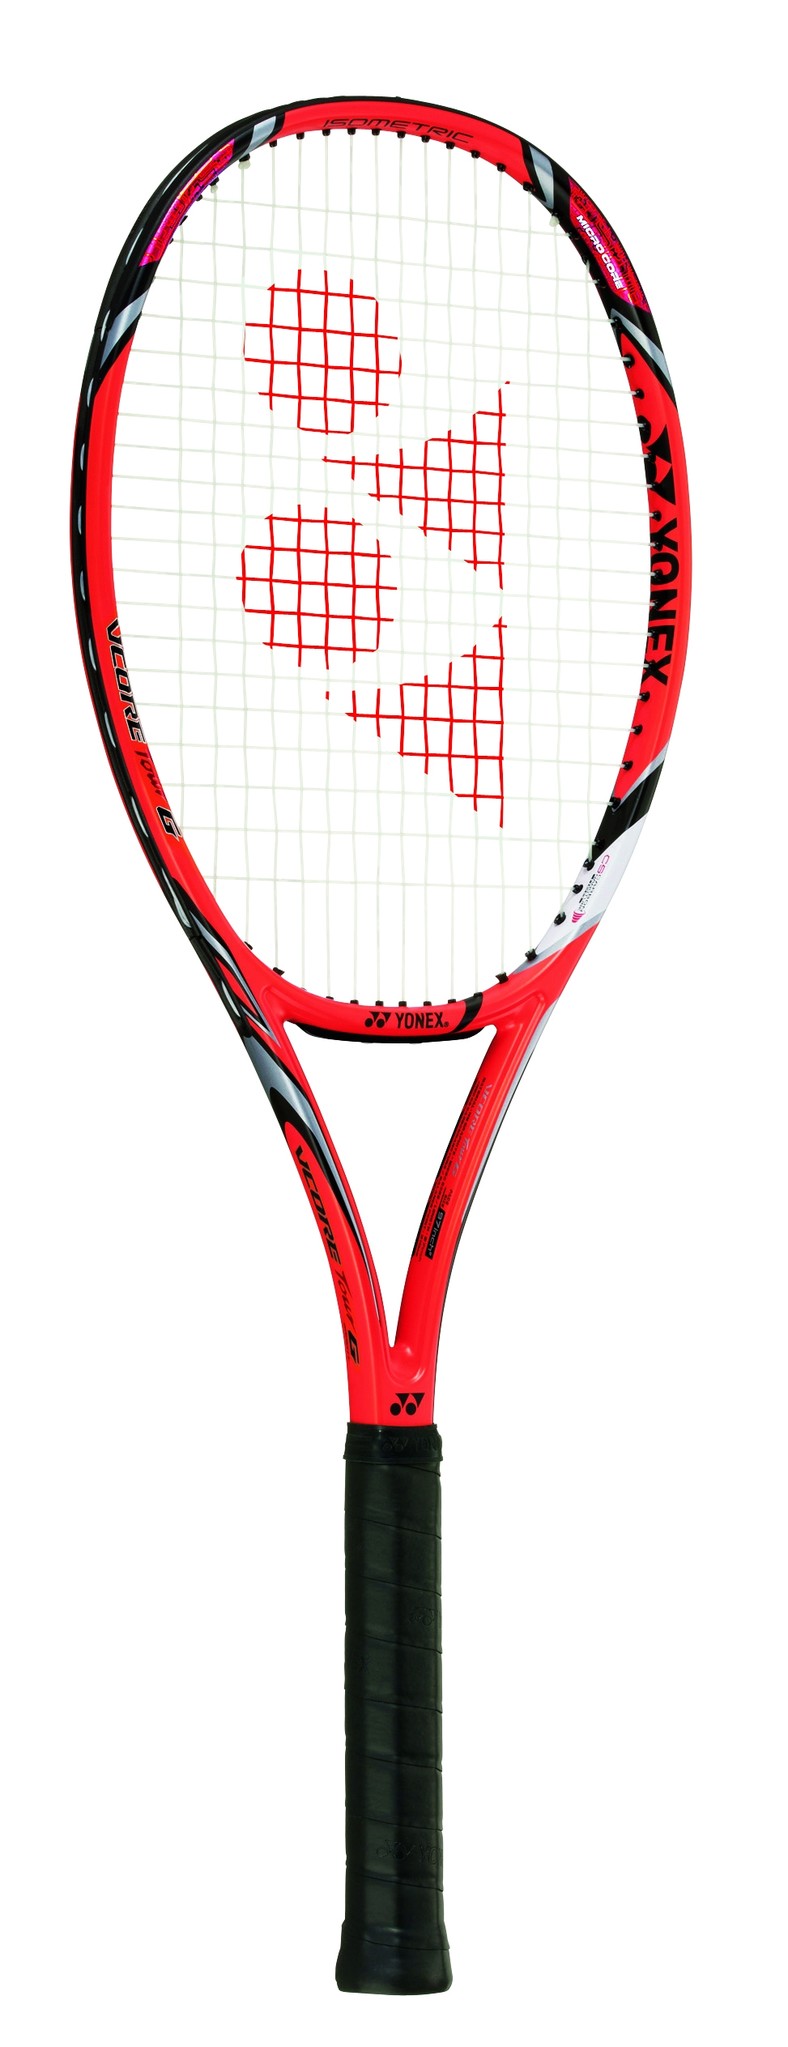 テニスラケット ヨネックス ブイコア ツアー ジー 2014年モデル【CUSTOM FIT】 (G1)YONEX VCORE TOUR G 2014G1装着グリップ